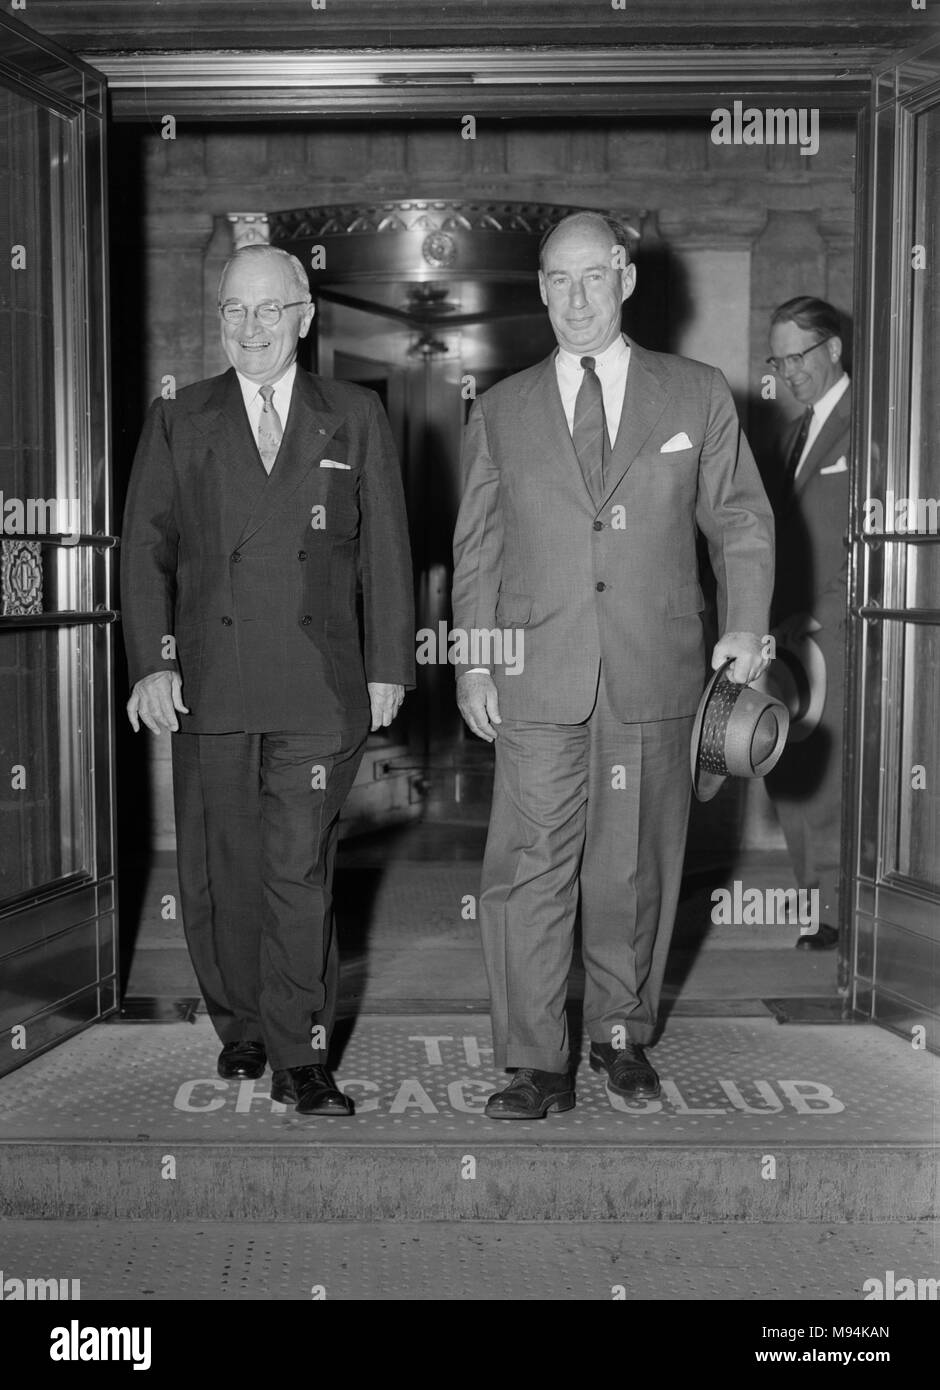 L'ancien président Harry S. Truman et candidate présidentielle Adlai Stevenson quitter le Club de Chicago après une apparition ensemble en 1956. Banque D'Images